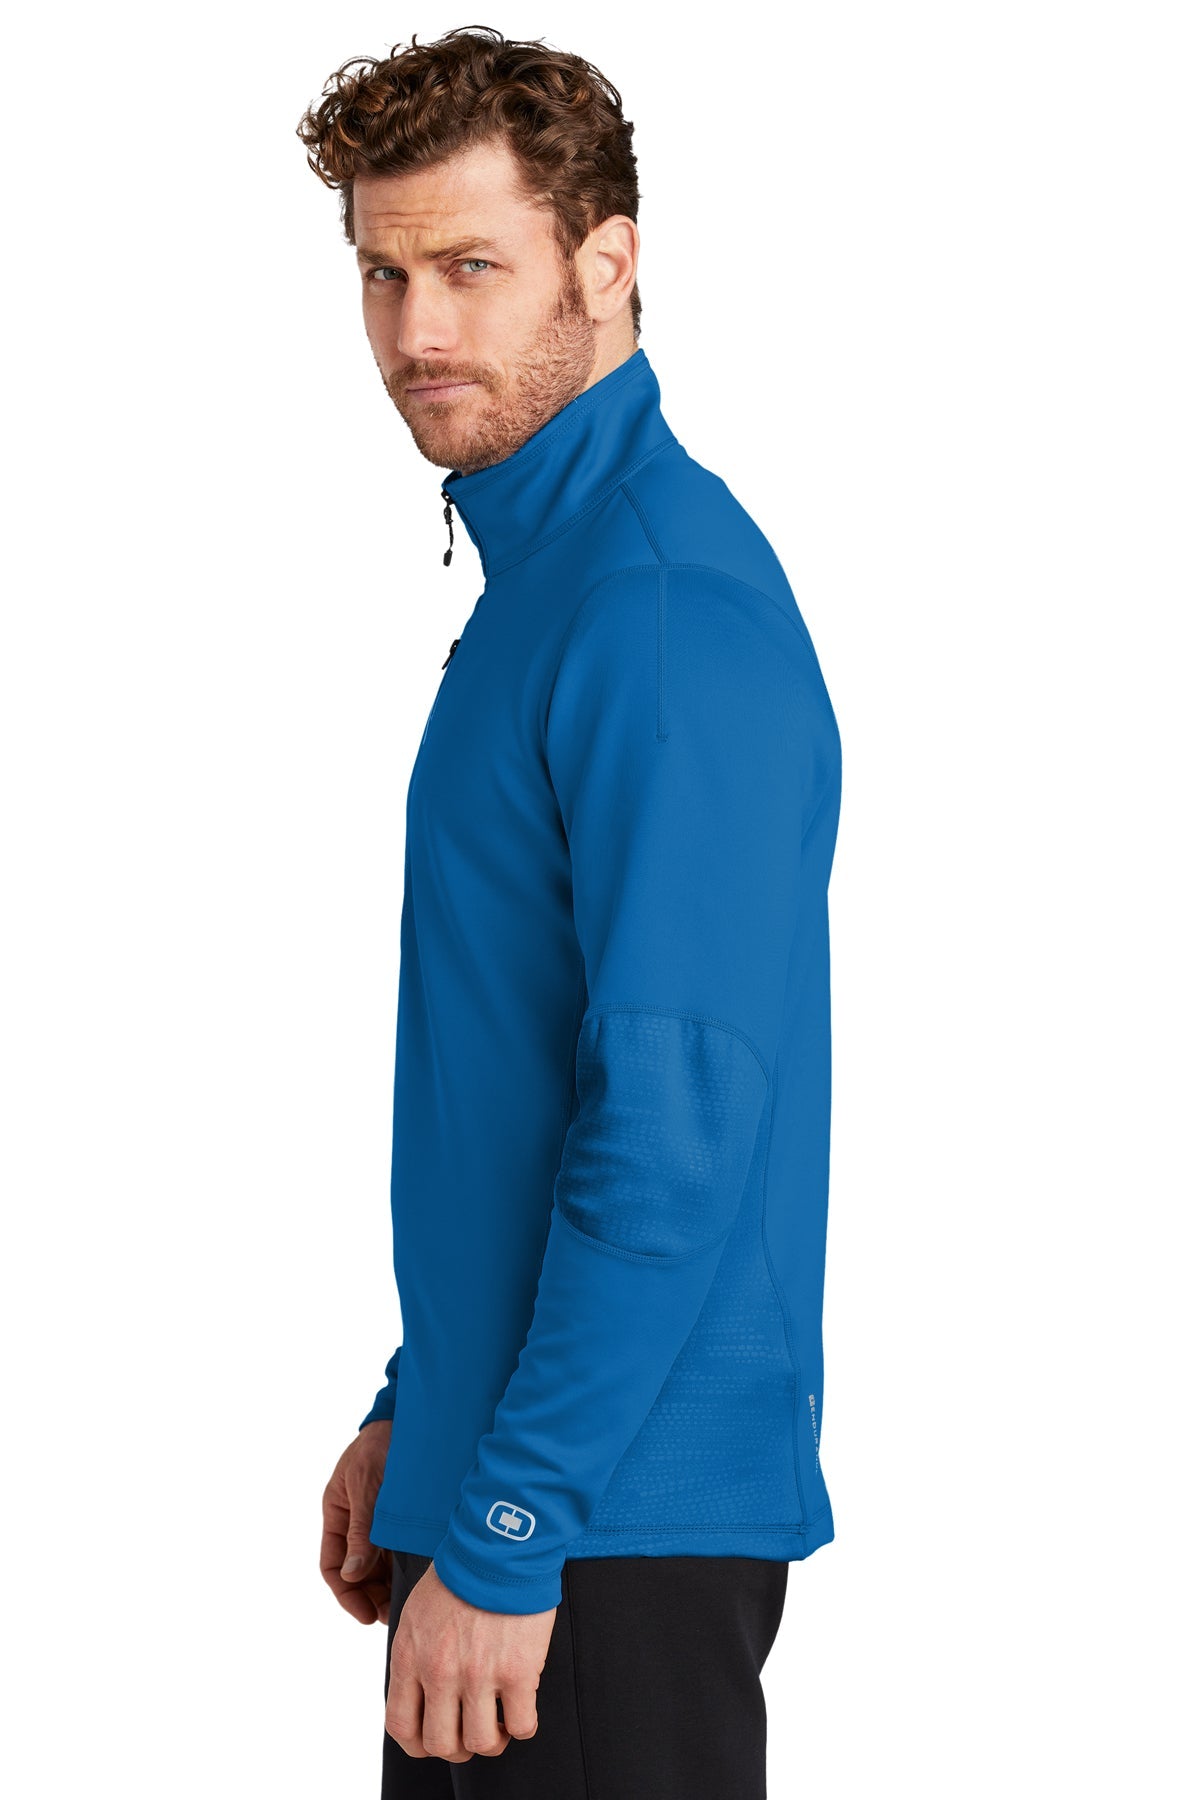 ogio endurance_oe701 _electric blue_company_logo_jackets